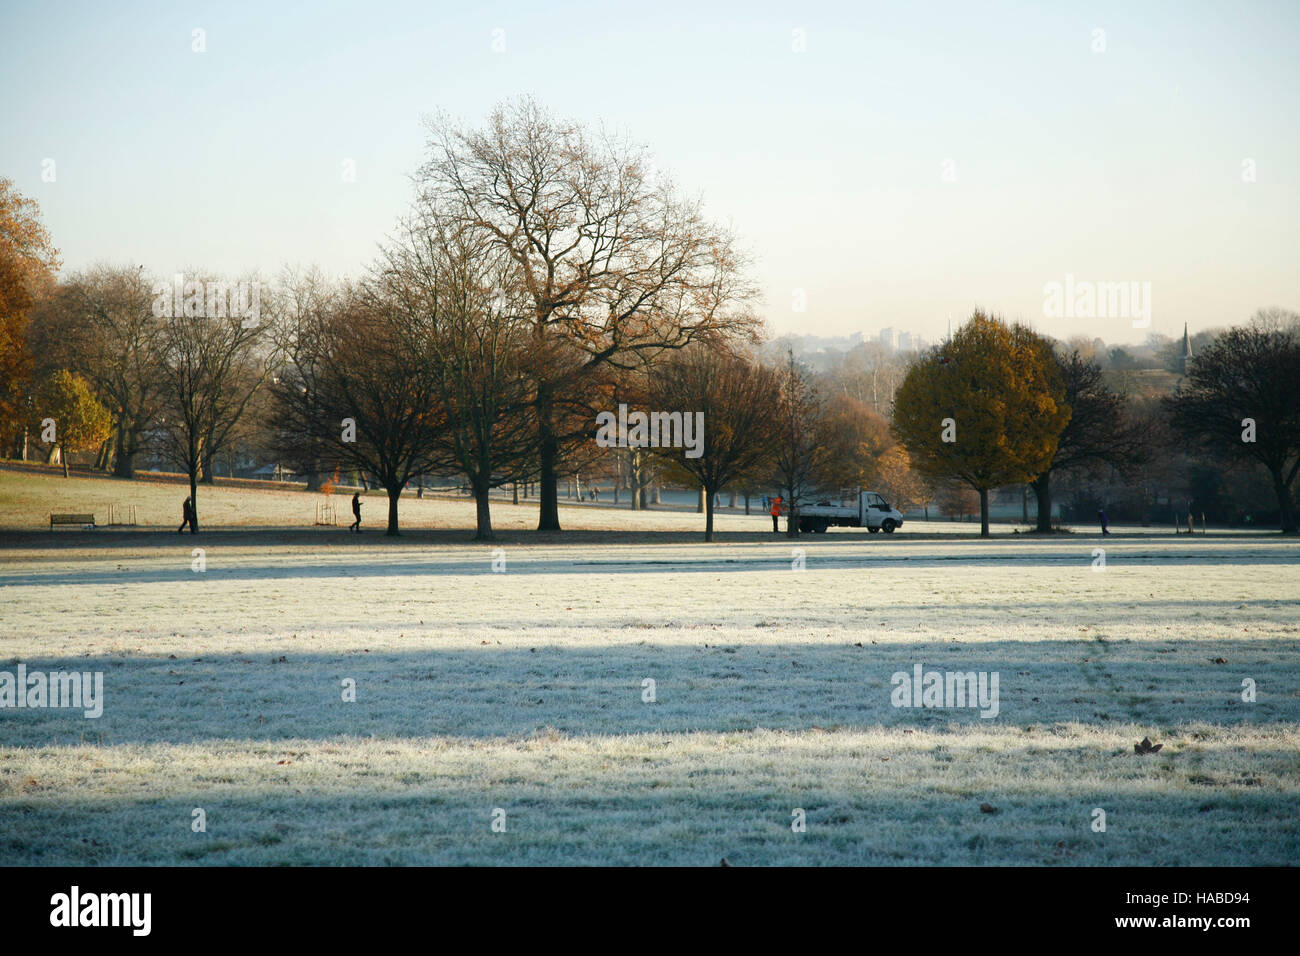 Londres, Royaume-Uni. 29 Nov, 2016. Brockwell Park, dans le sud de Londres, 8h30 le matin, température de congélation : Crédit fotographic.eu/Alamy Live News Banque D'Images